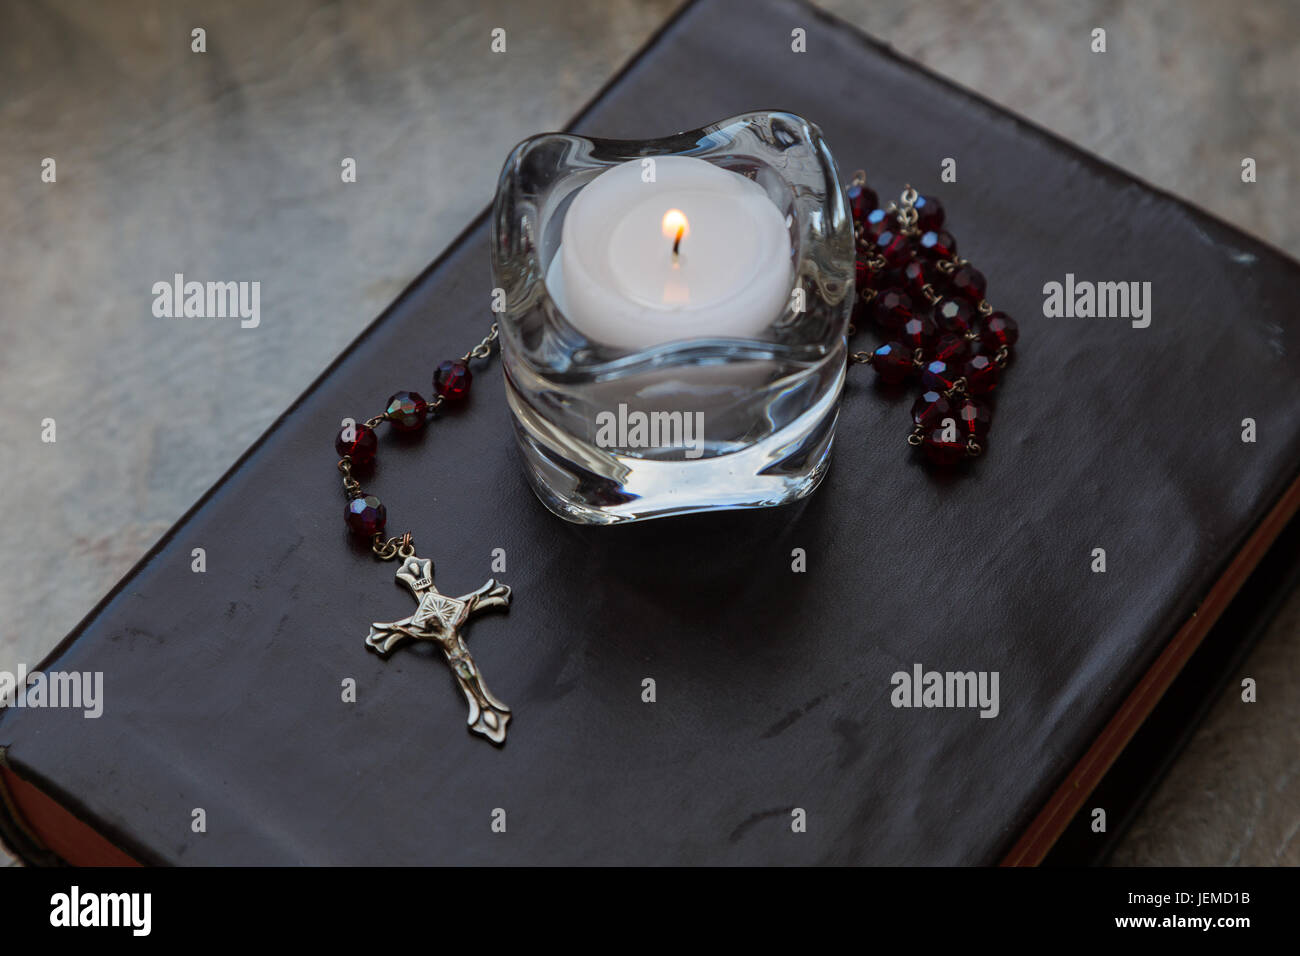 Nahaufnahme einer verwitterten Leder bezogen-Bibel mit einer Reihe von roten Rosenkranz und ein Teelicht Kerze in einem Glas Kerzenständer. Stockfoto